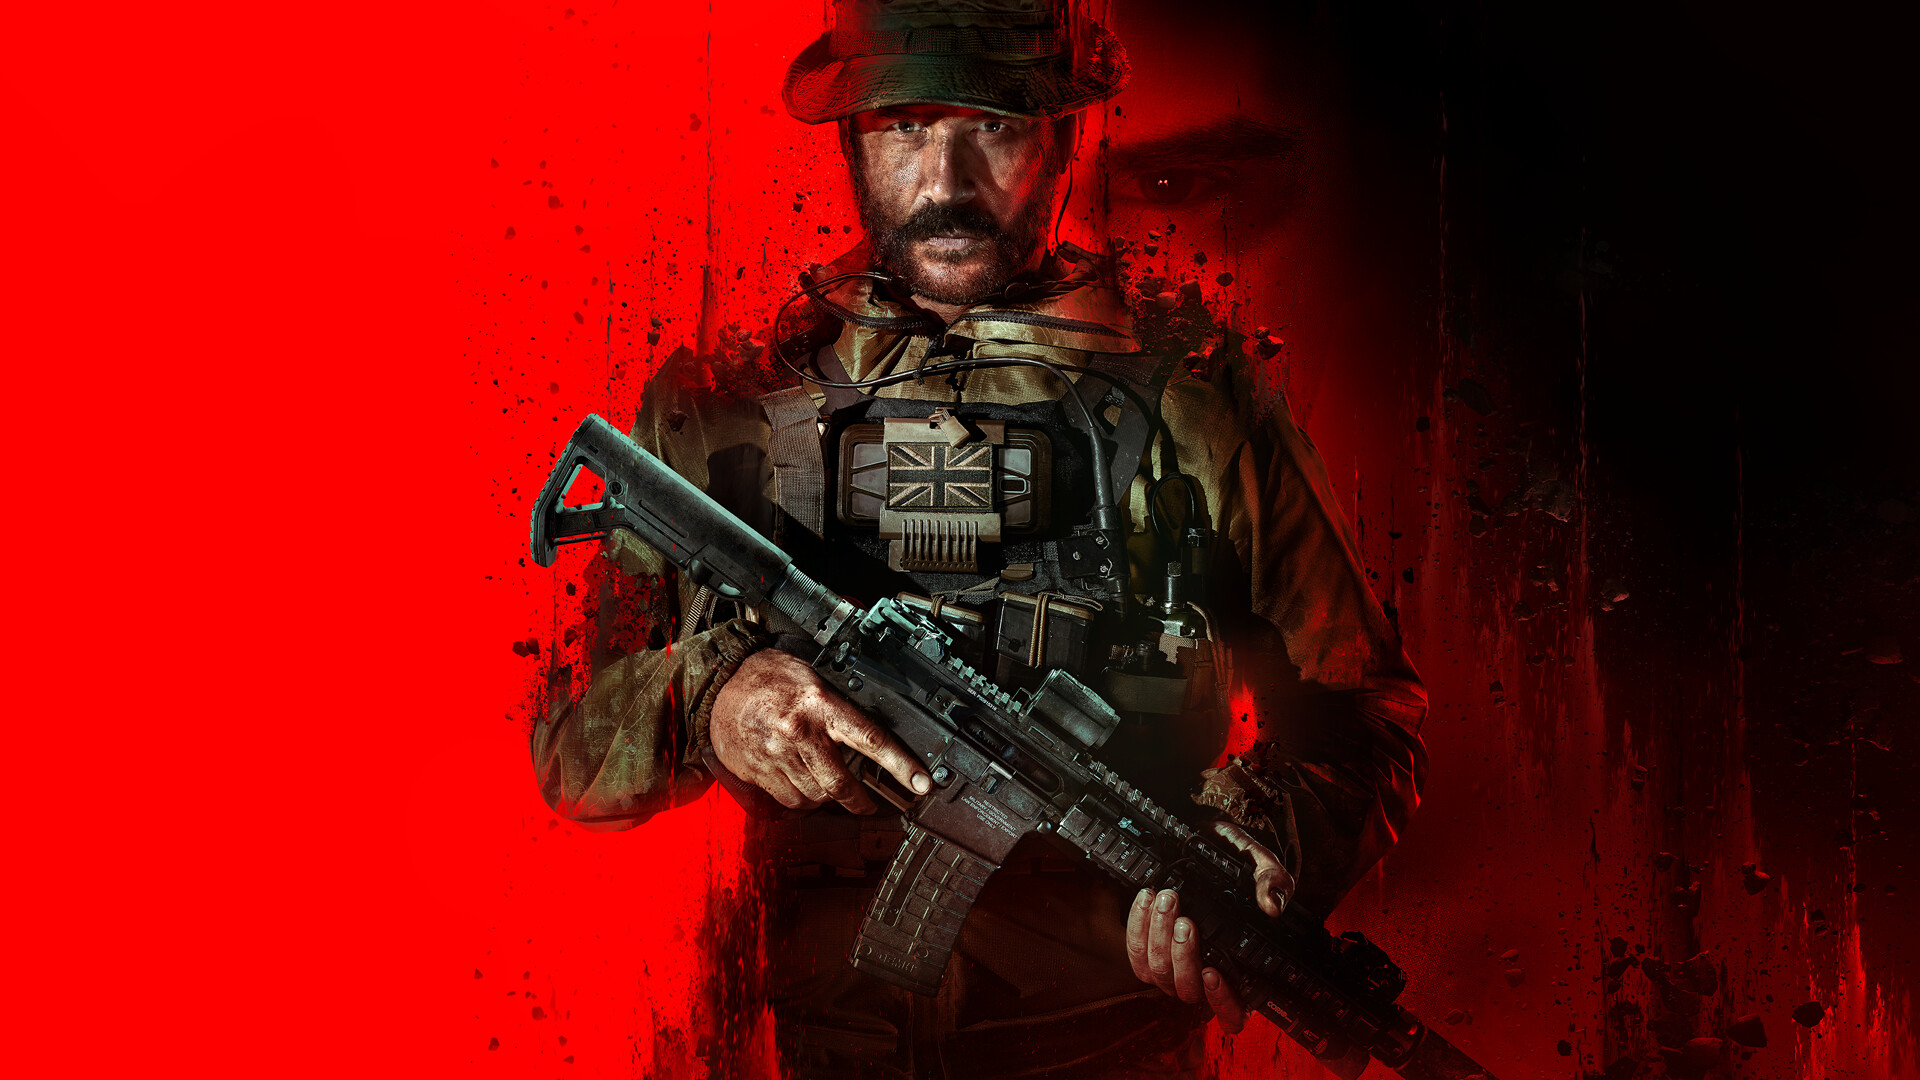 Игрок смог вернуть деньги после прохождения сюжетной компании Call of Duty: Modern Warfare 3